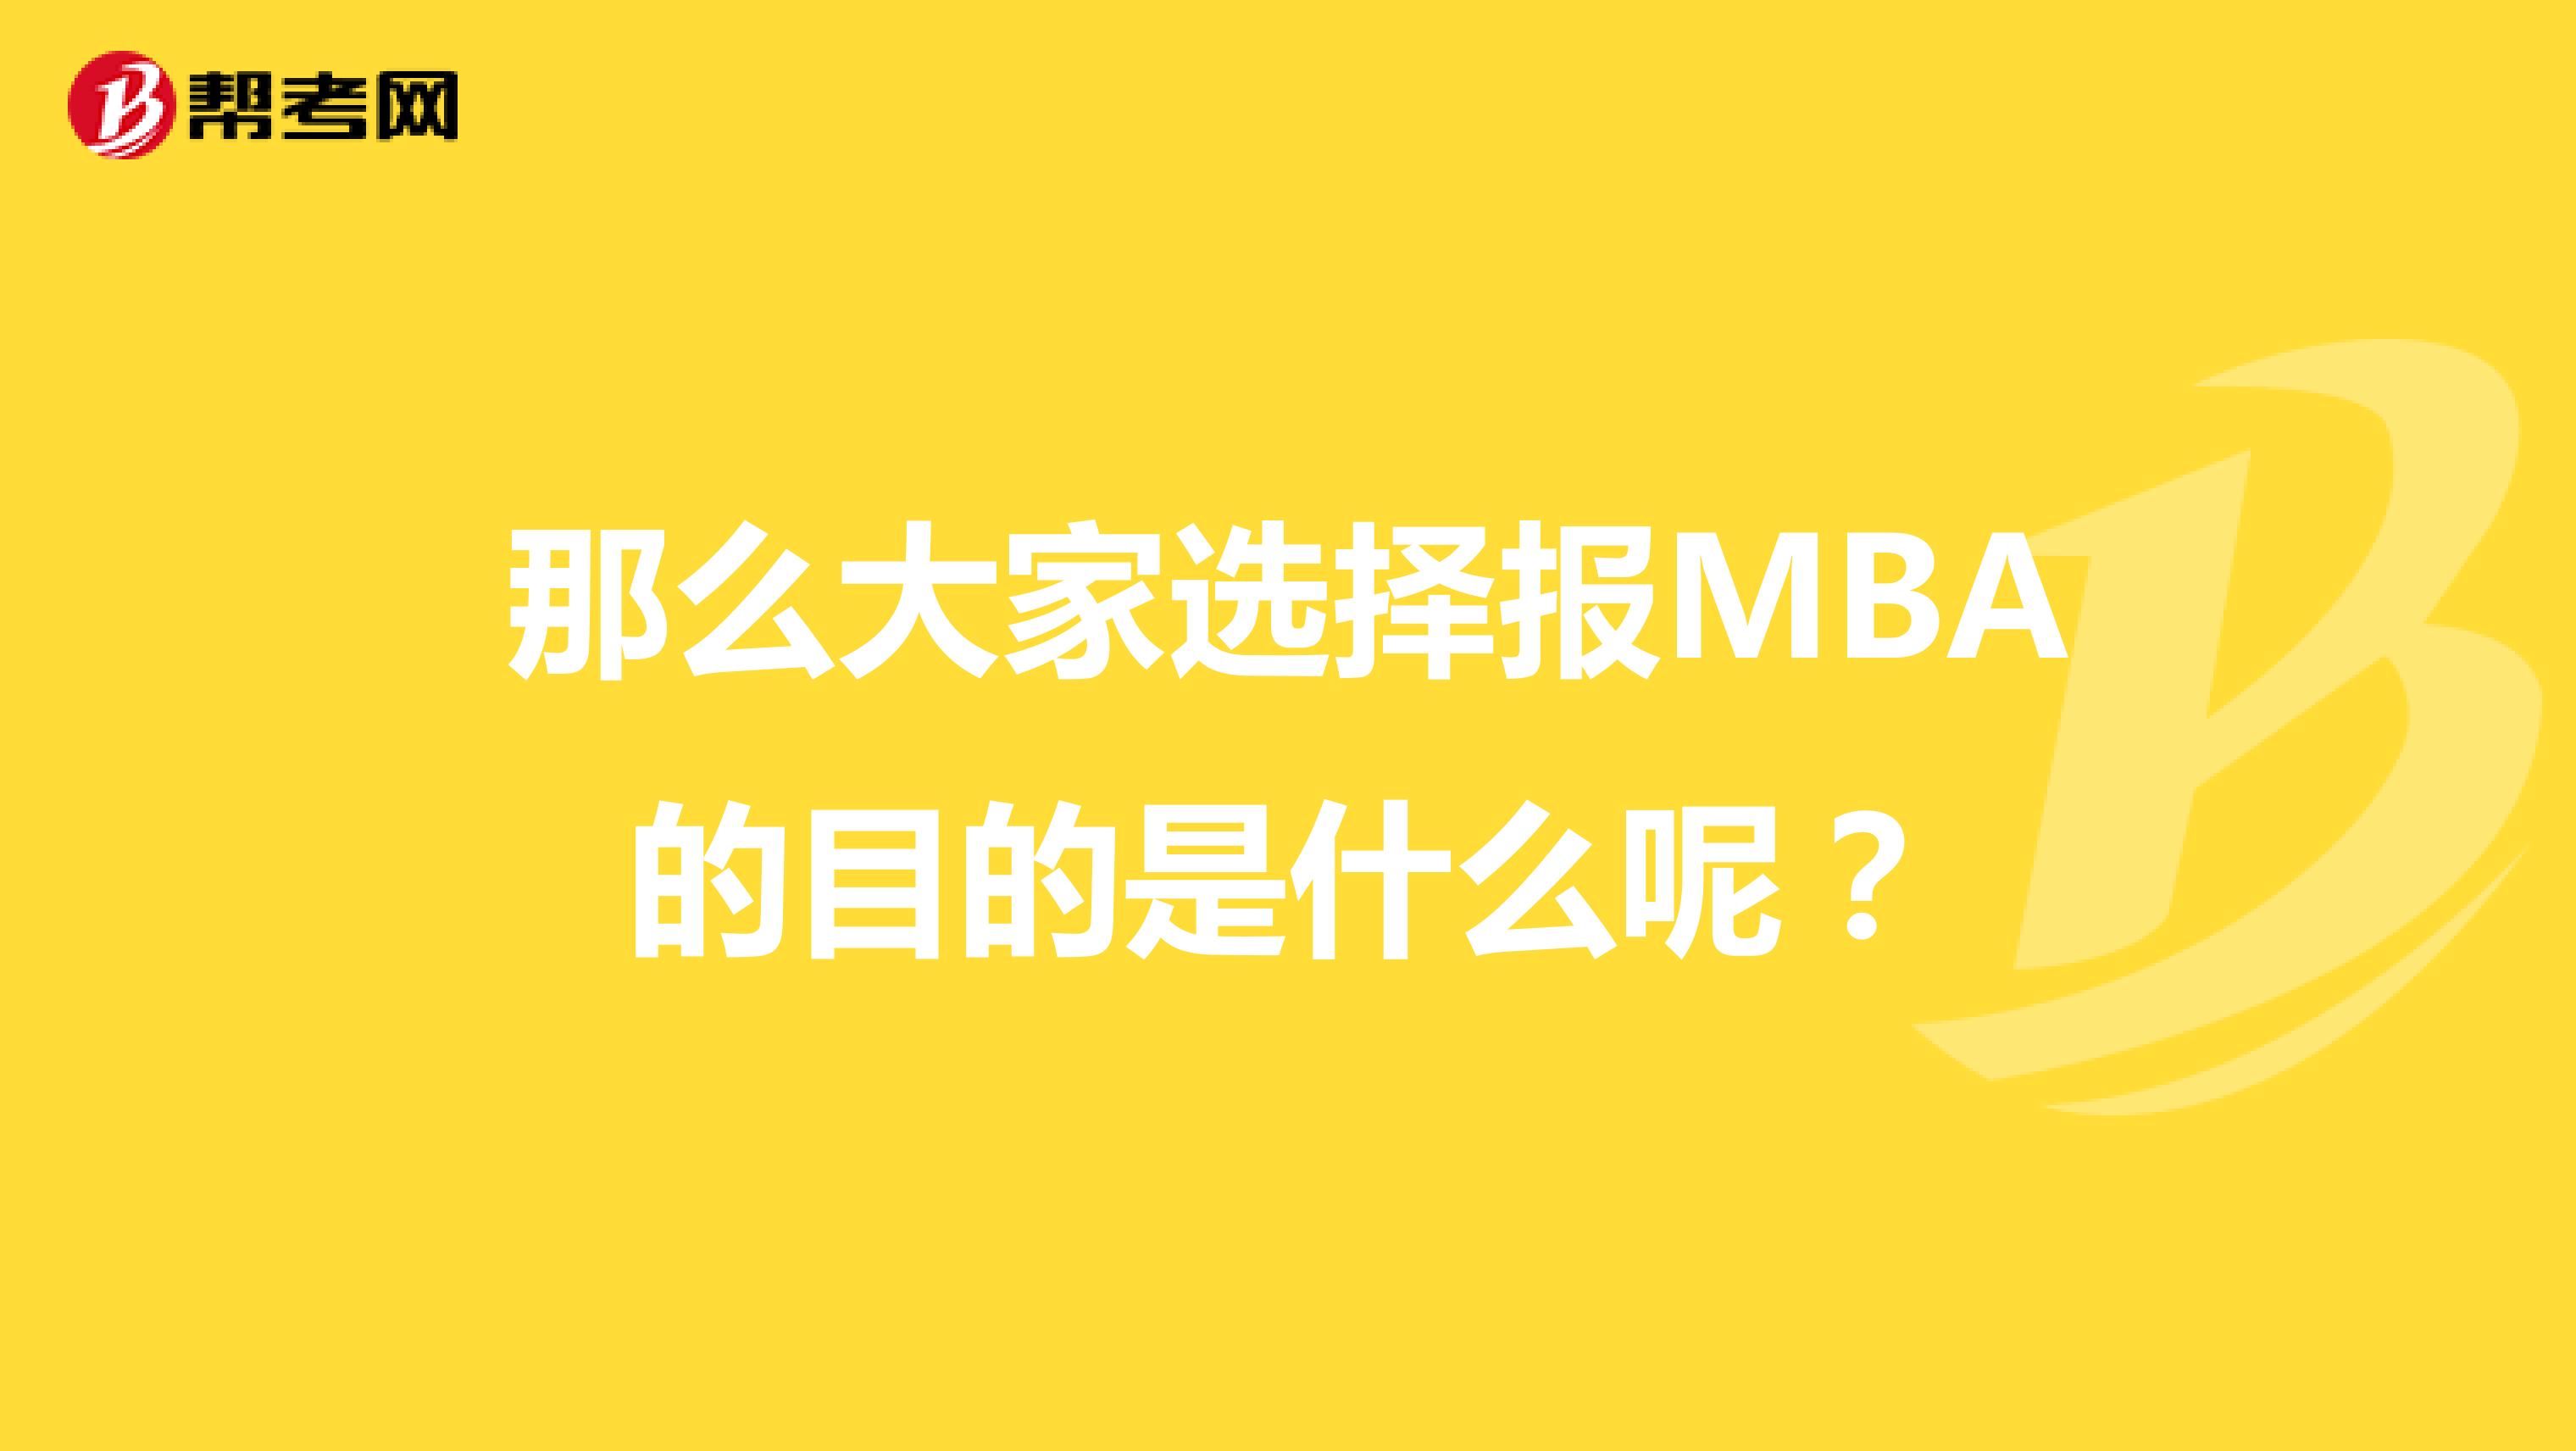 那么大家选择报MBA的目的是什么呢？